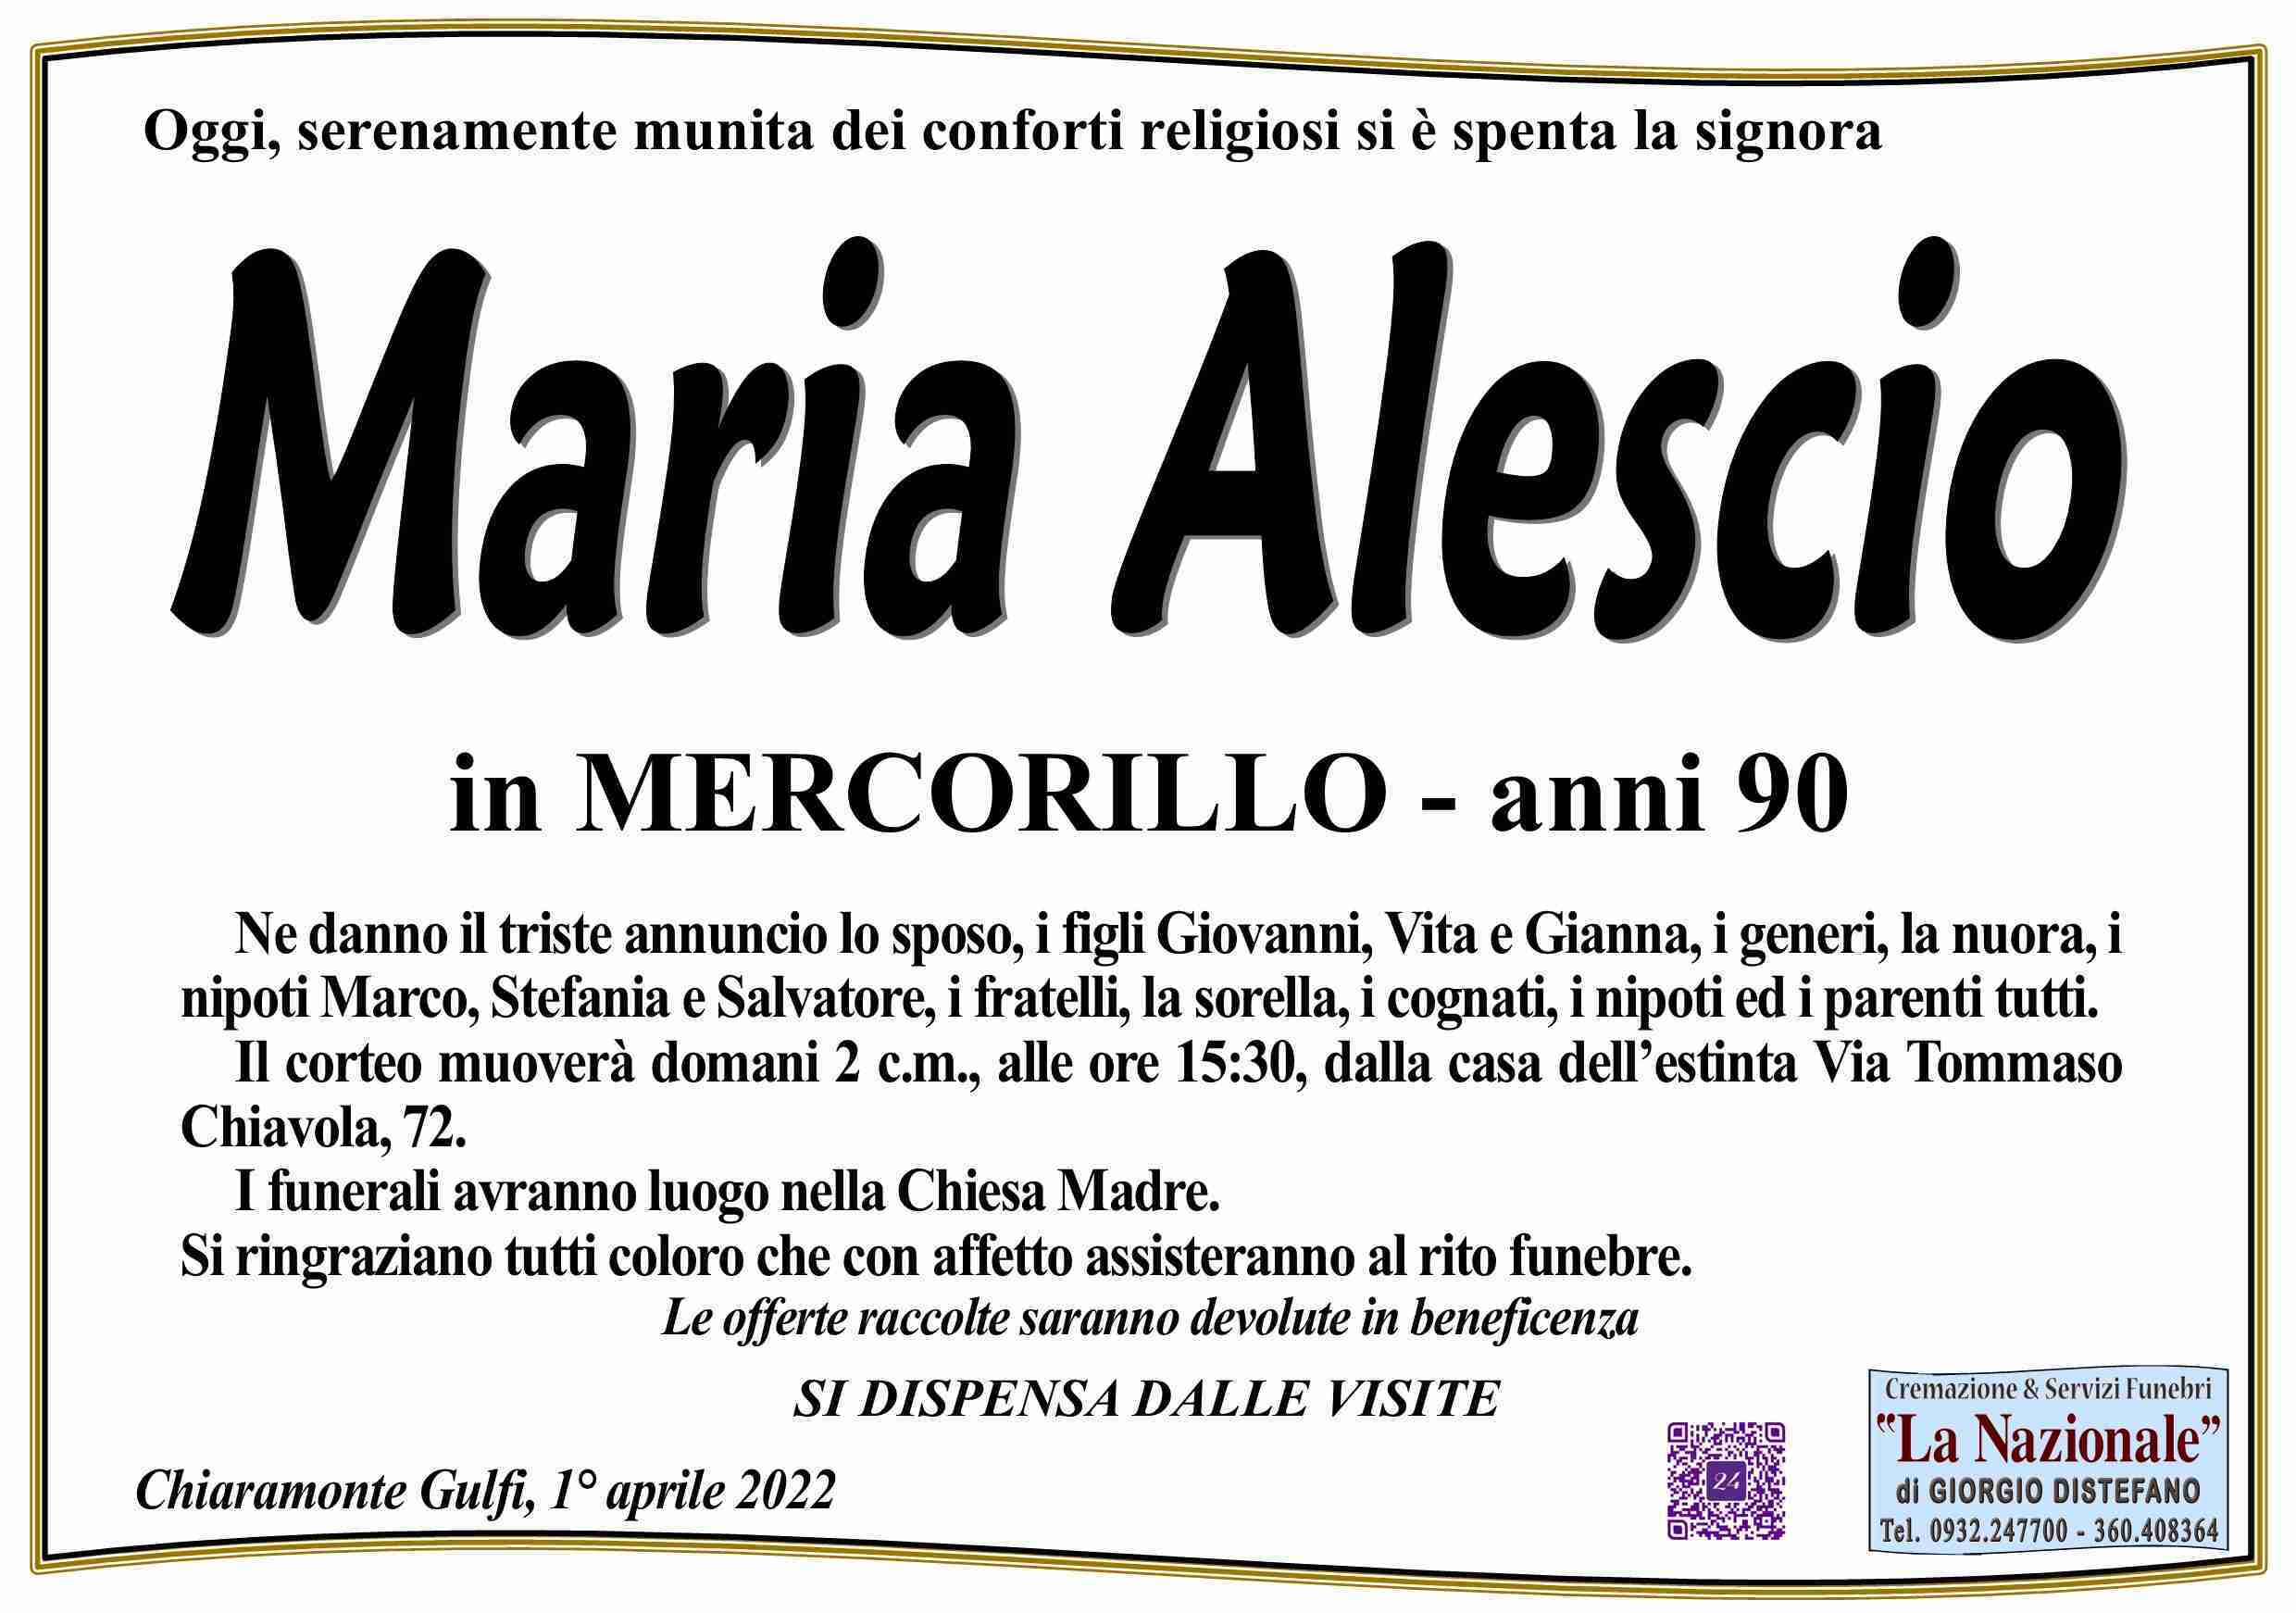 Maria Alescio